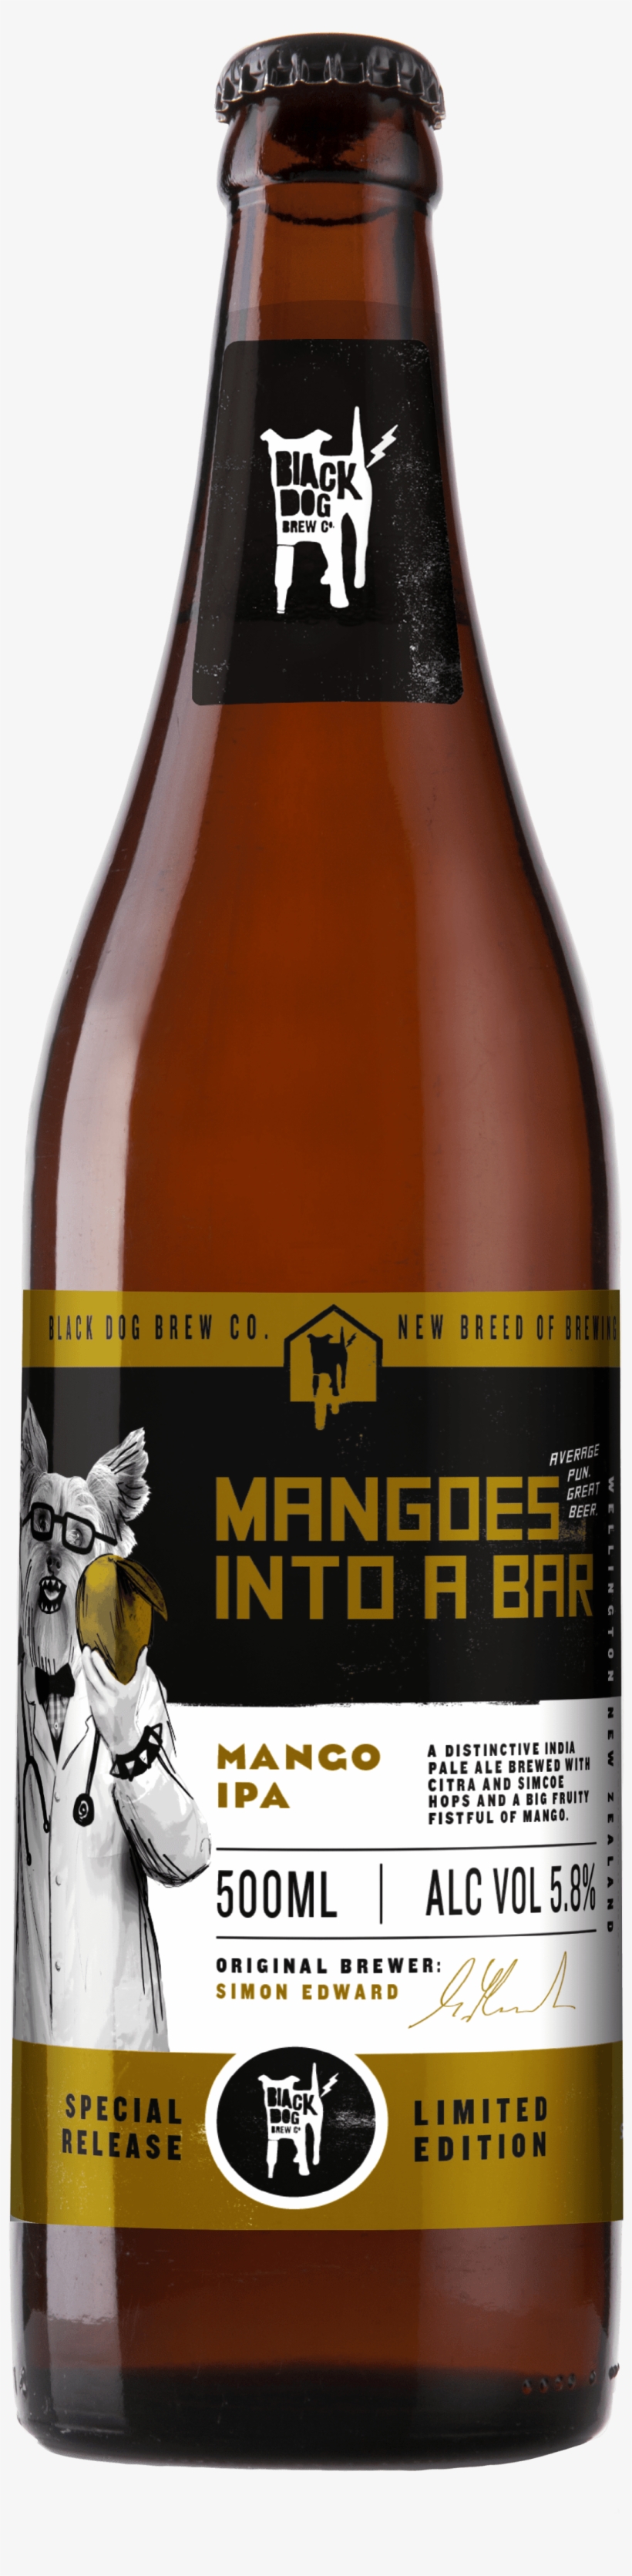 Mangoes Into A Bar Black Dog 500ml - Black Dog Beer, transparent png #4004606